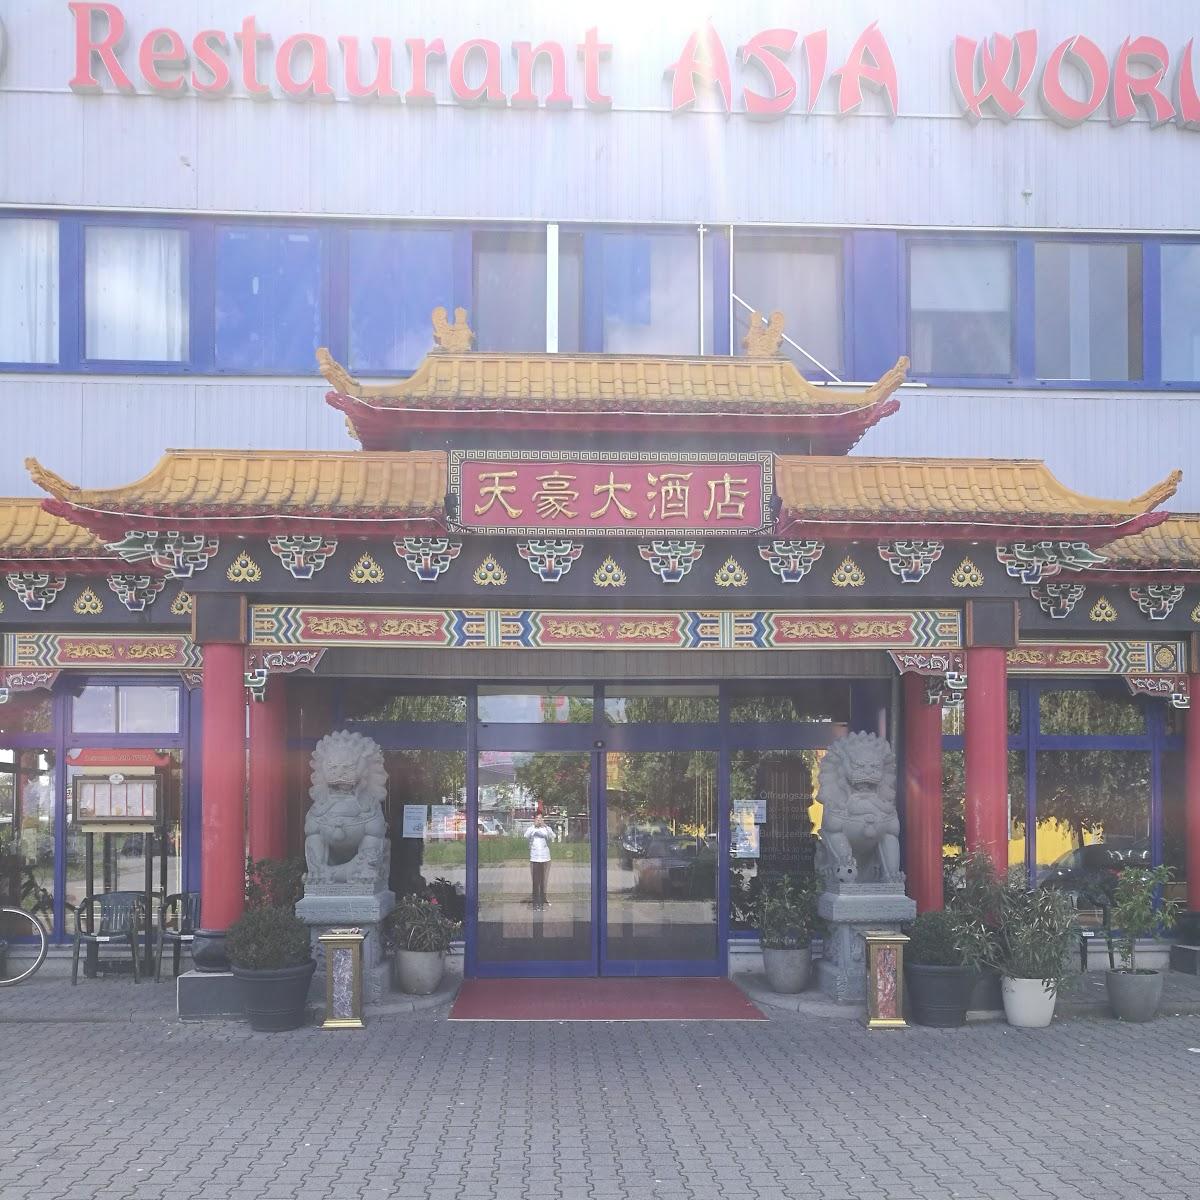 Restaurant "Asia World" in Mainz